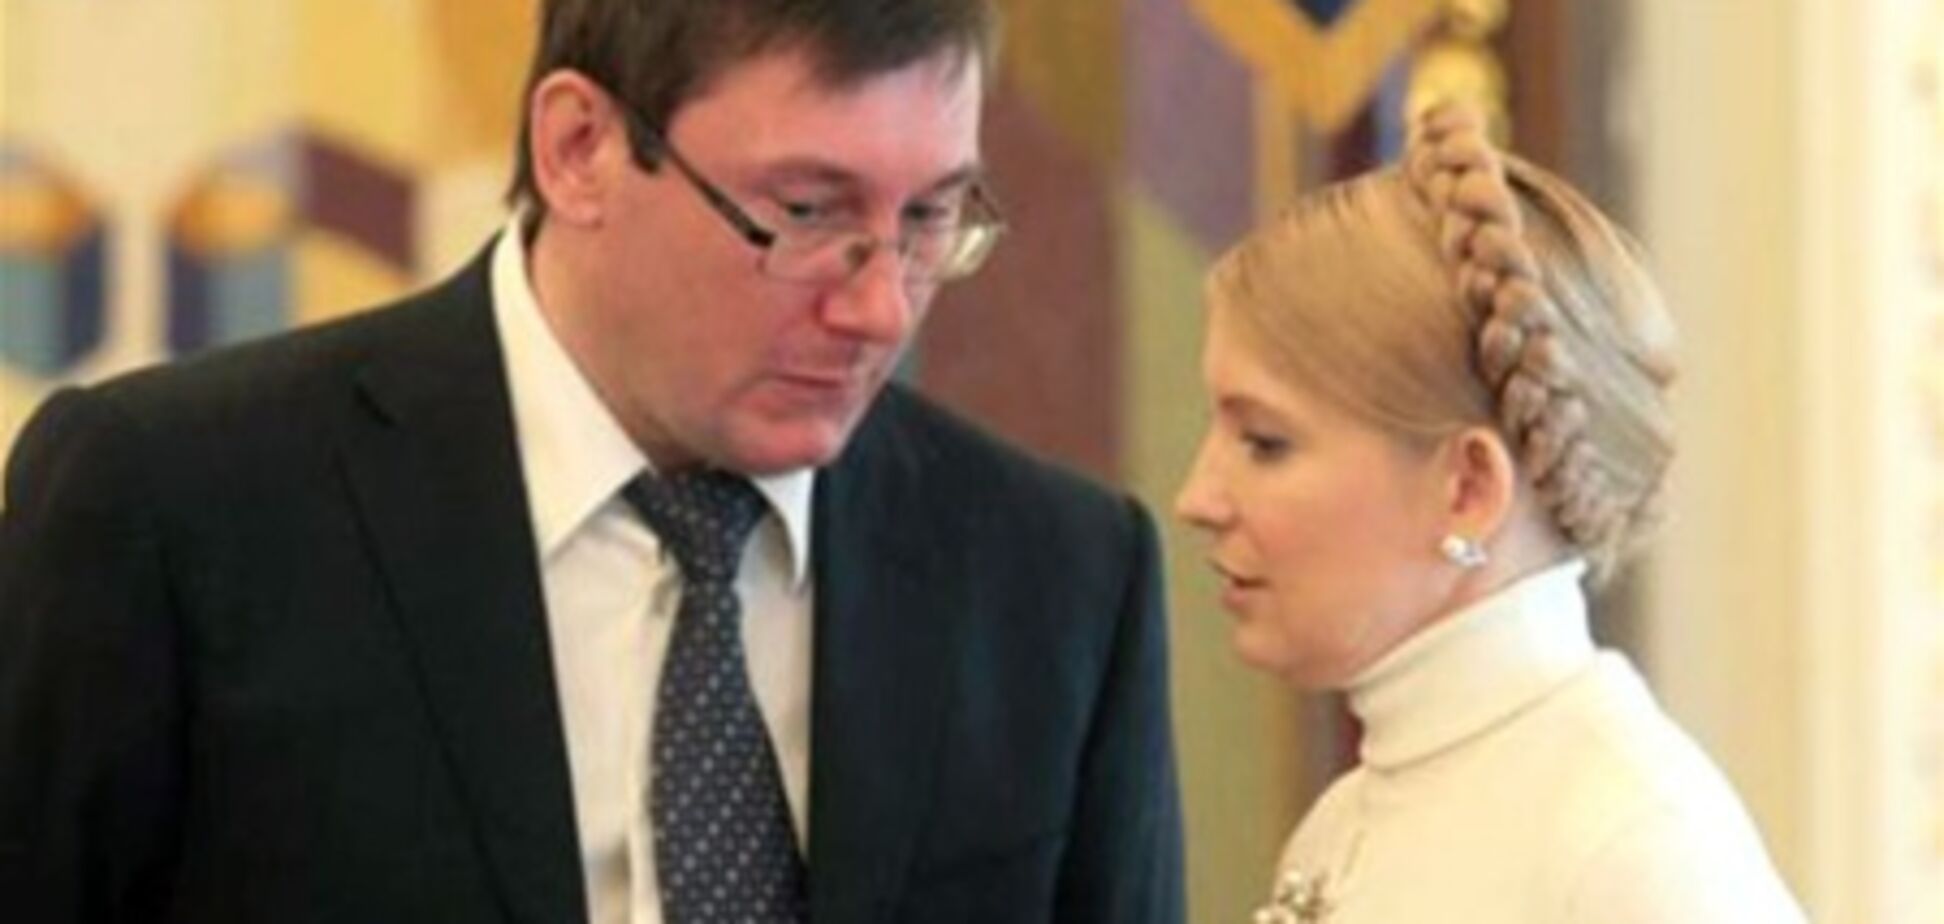 Тимошенко и Луценко не выйдут раньше срока - нардеп ПР. Видео